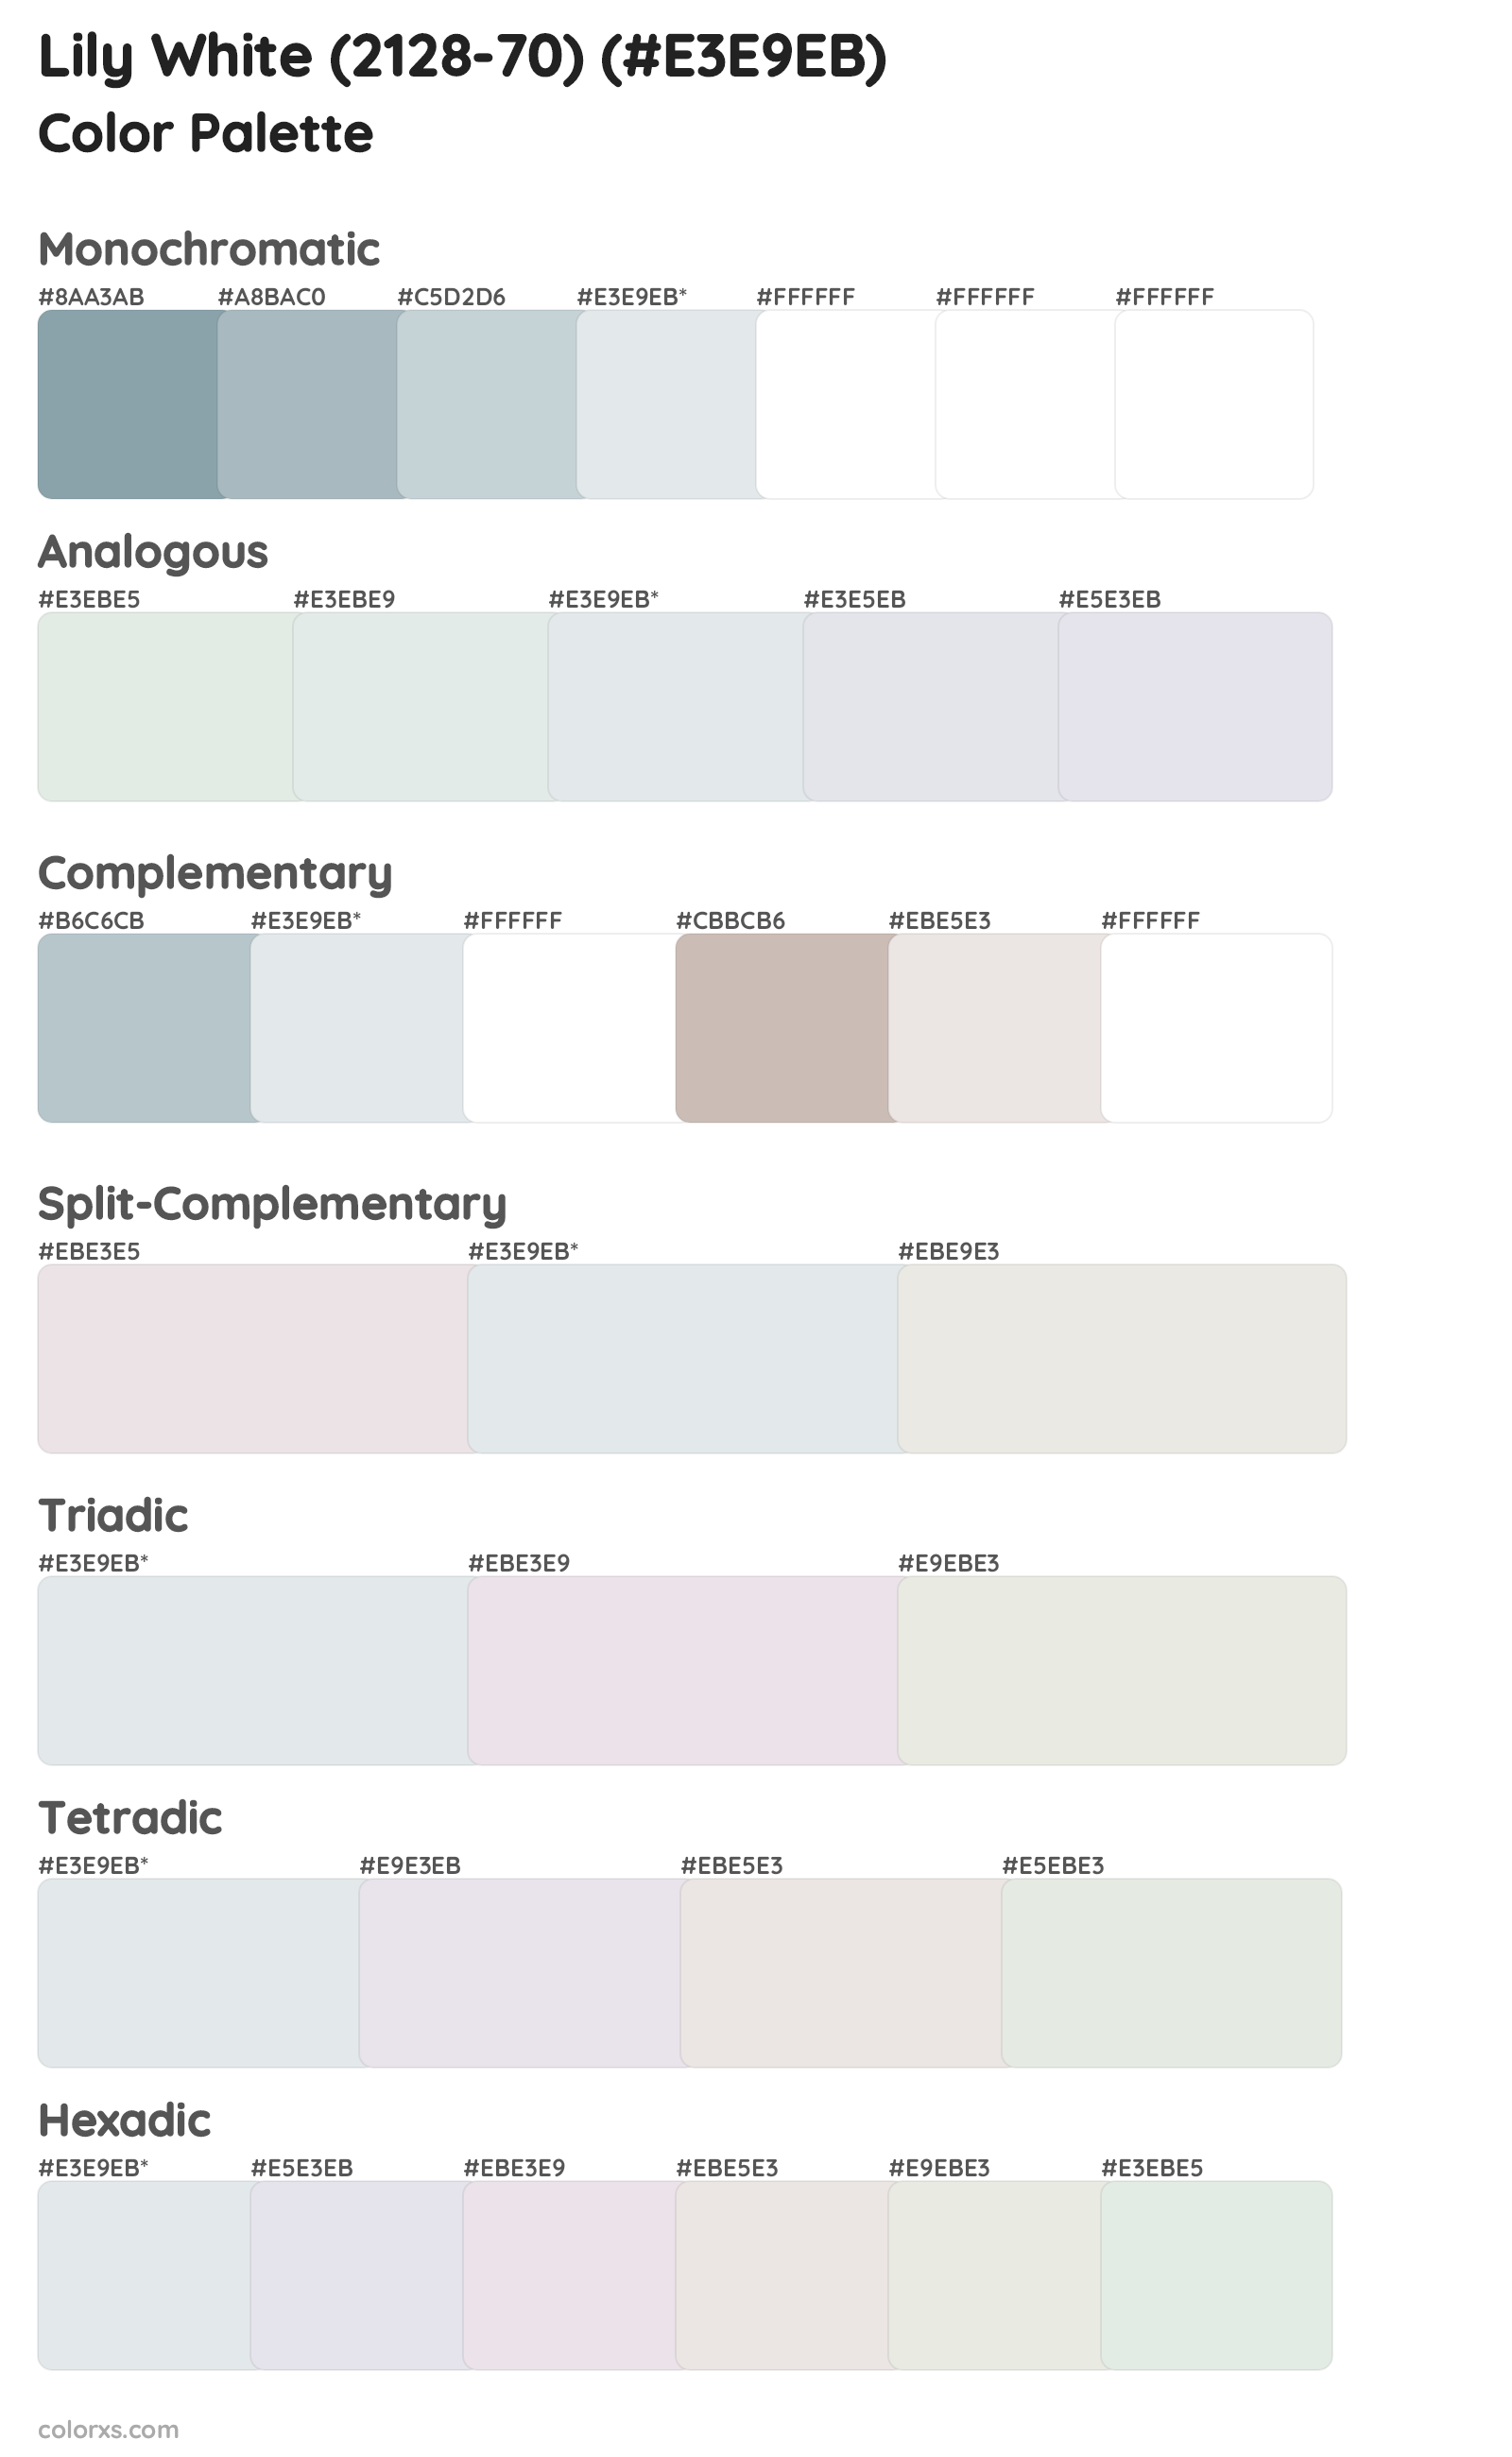 Lily White (2128-70) Color Scheme Palettes